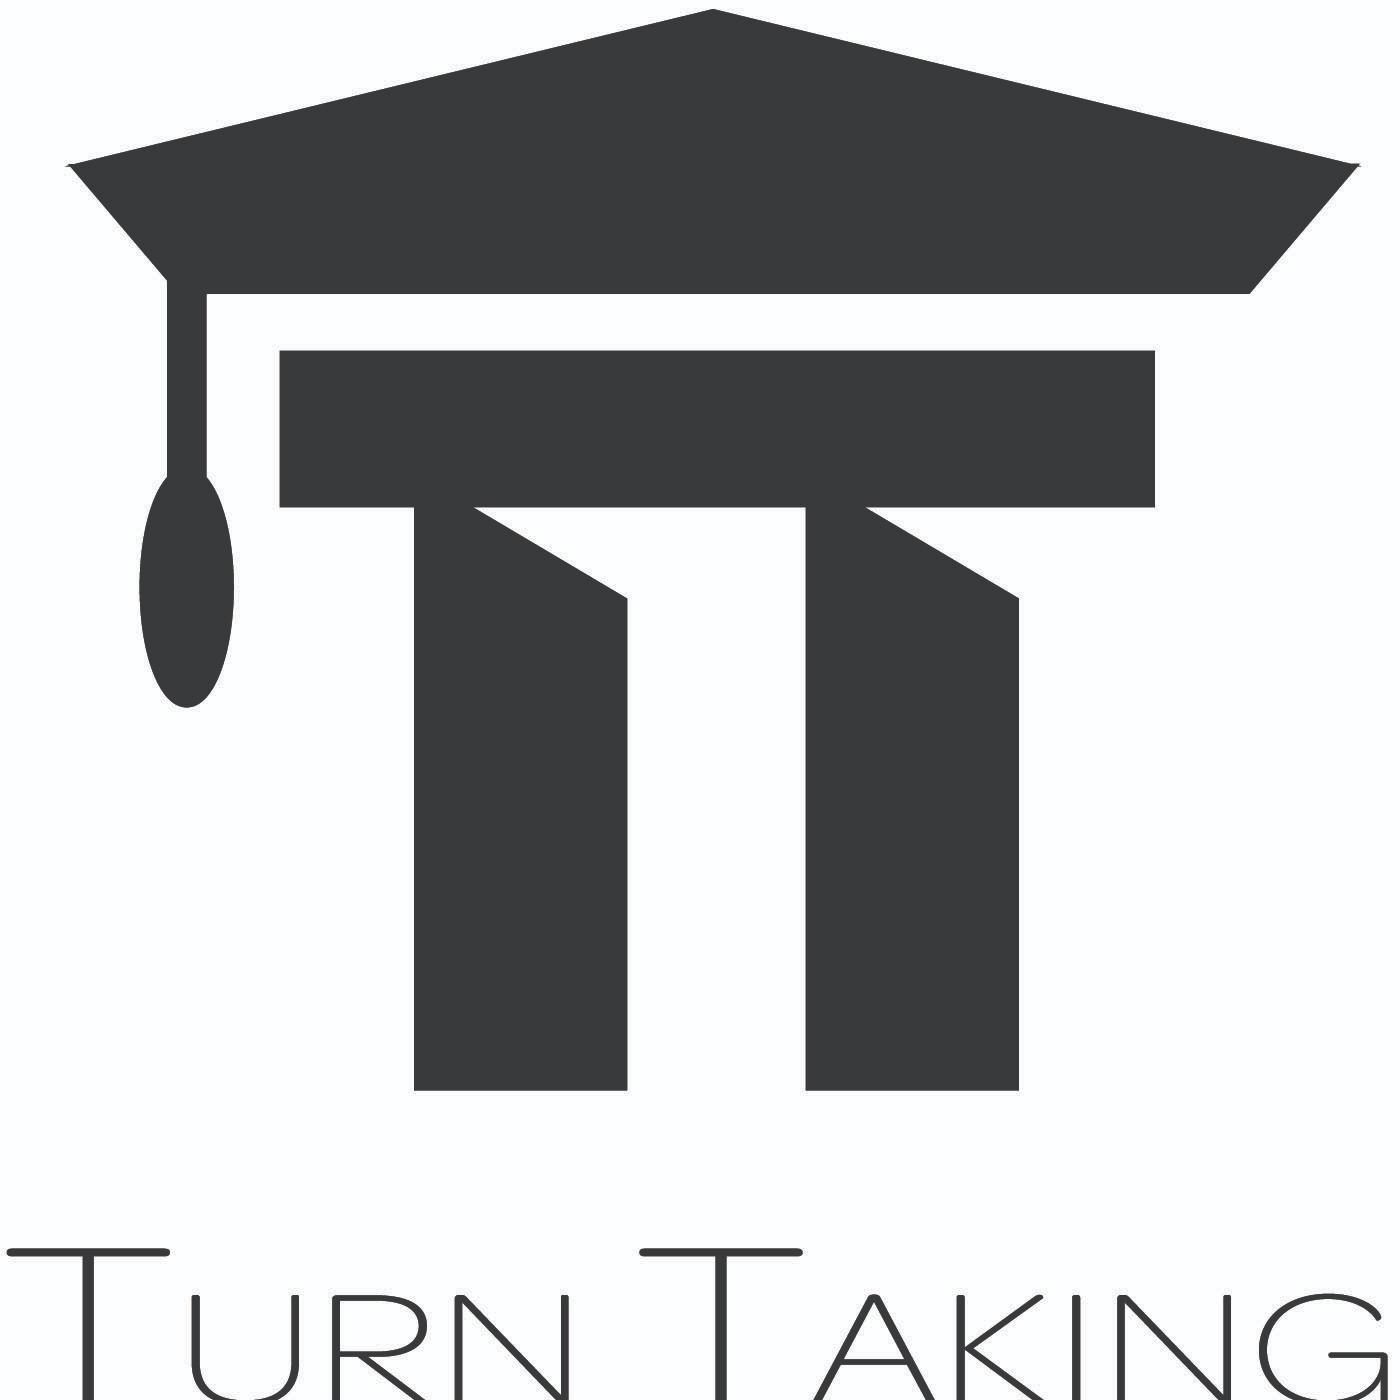 Turn Taking